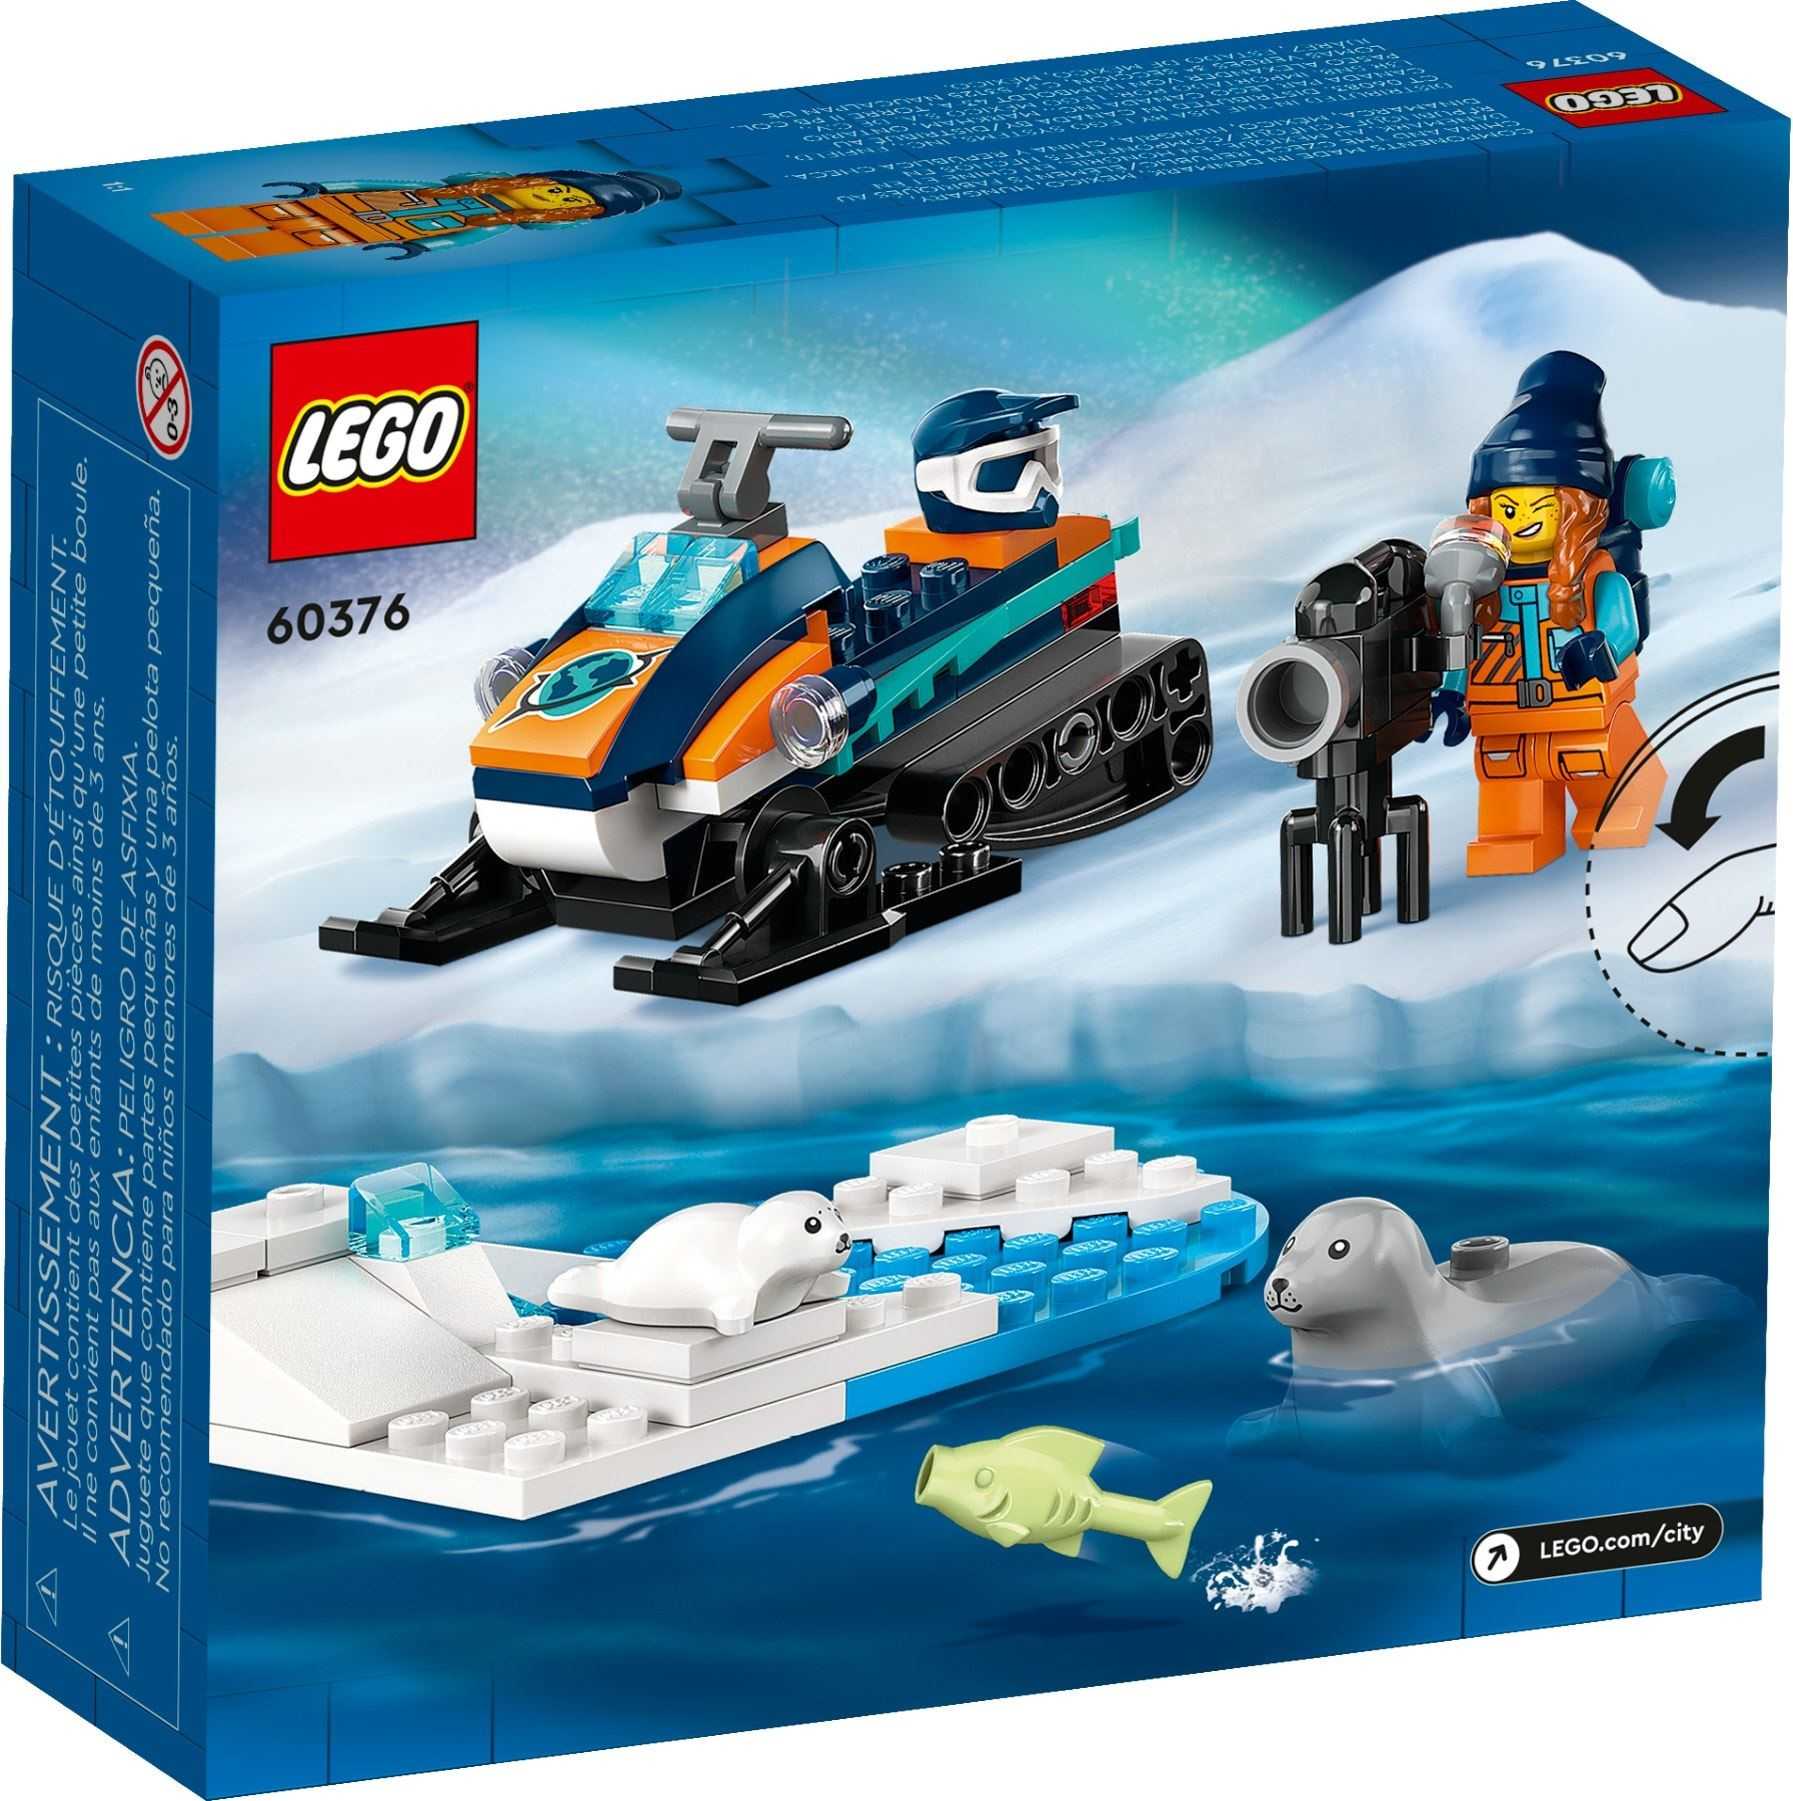 【電積系@北投】LEGO 60376 北極探險家雪上摩托車(4)-City